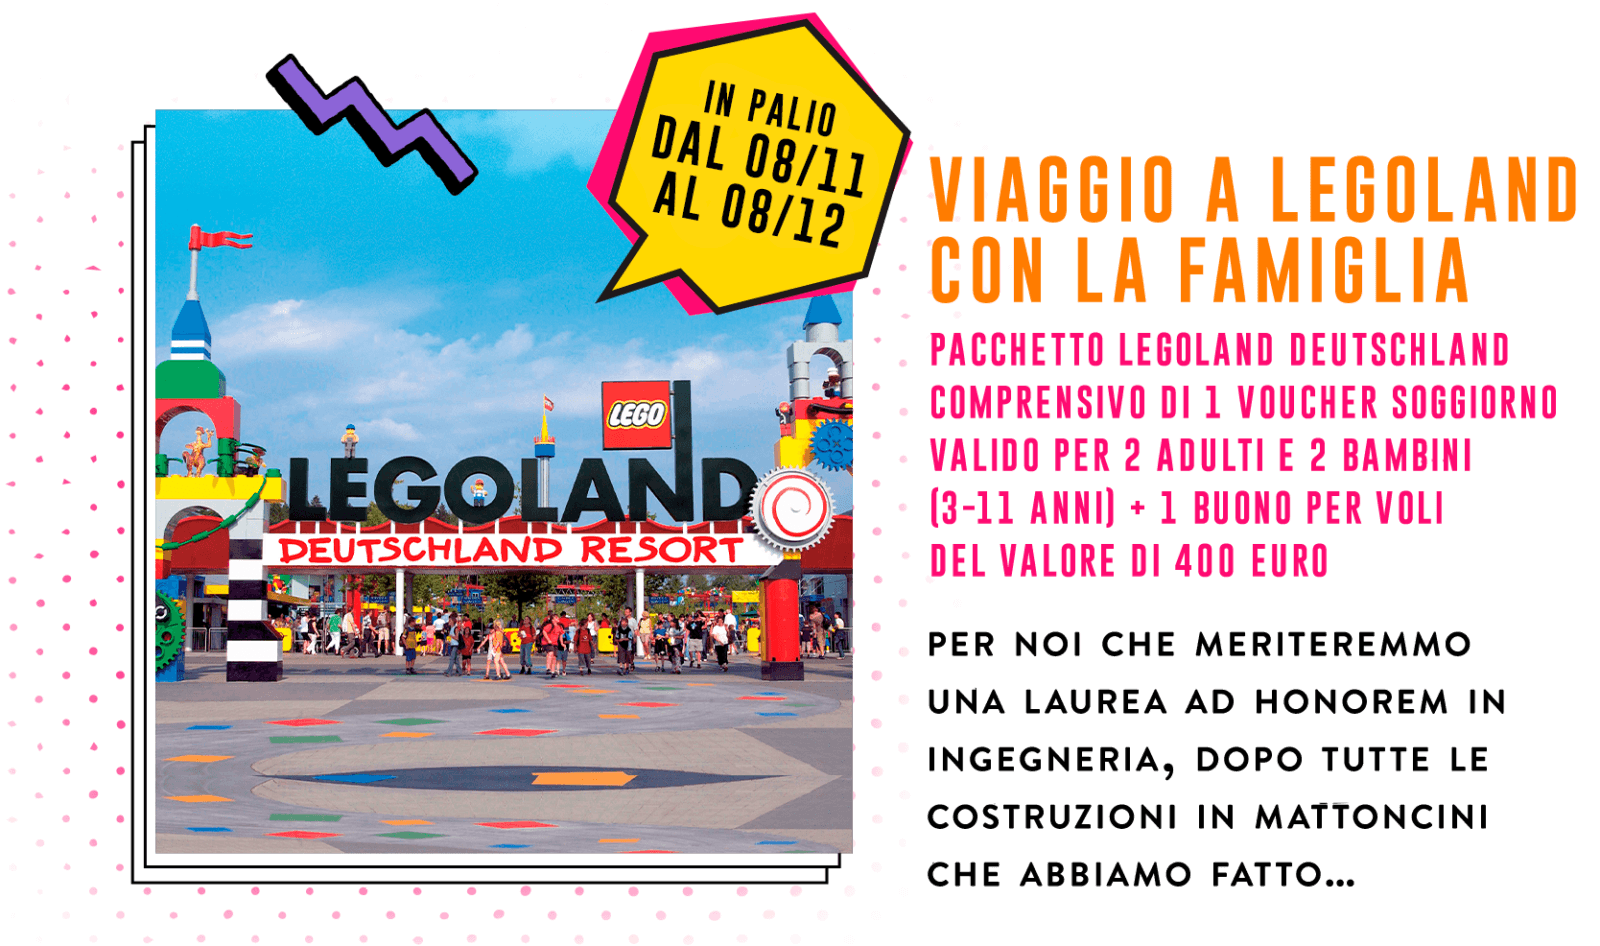 Concorso Plasmon biscotto "dei grandi": vinci premi Casio, Caran d’Ache, Polaroid, Smeg, Doniselli e viaggi a Legoland! 33